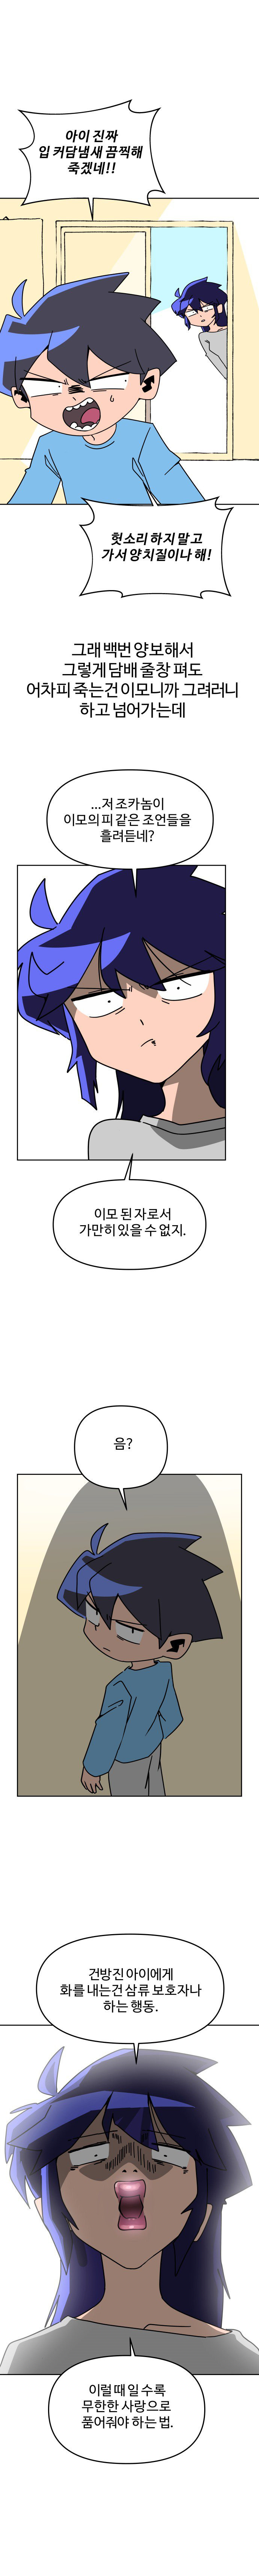 학교에서 가족소개하는 만화.manhwa